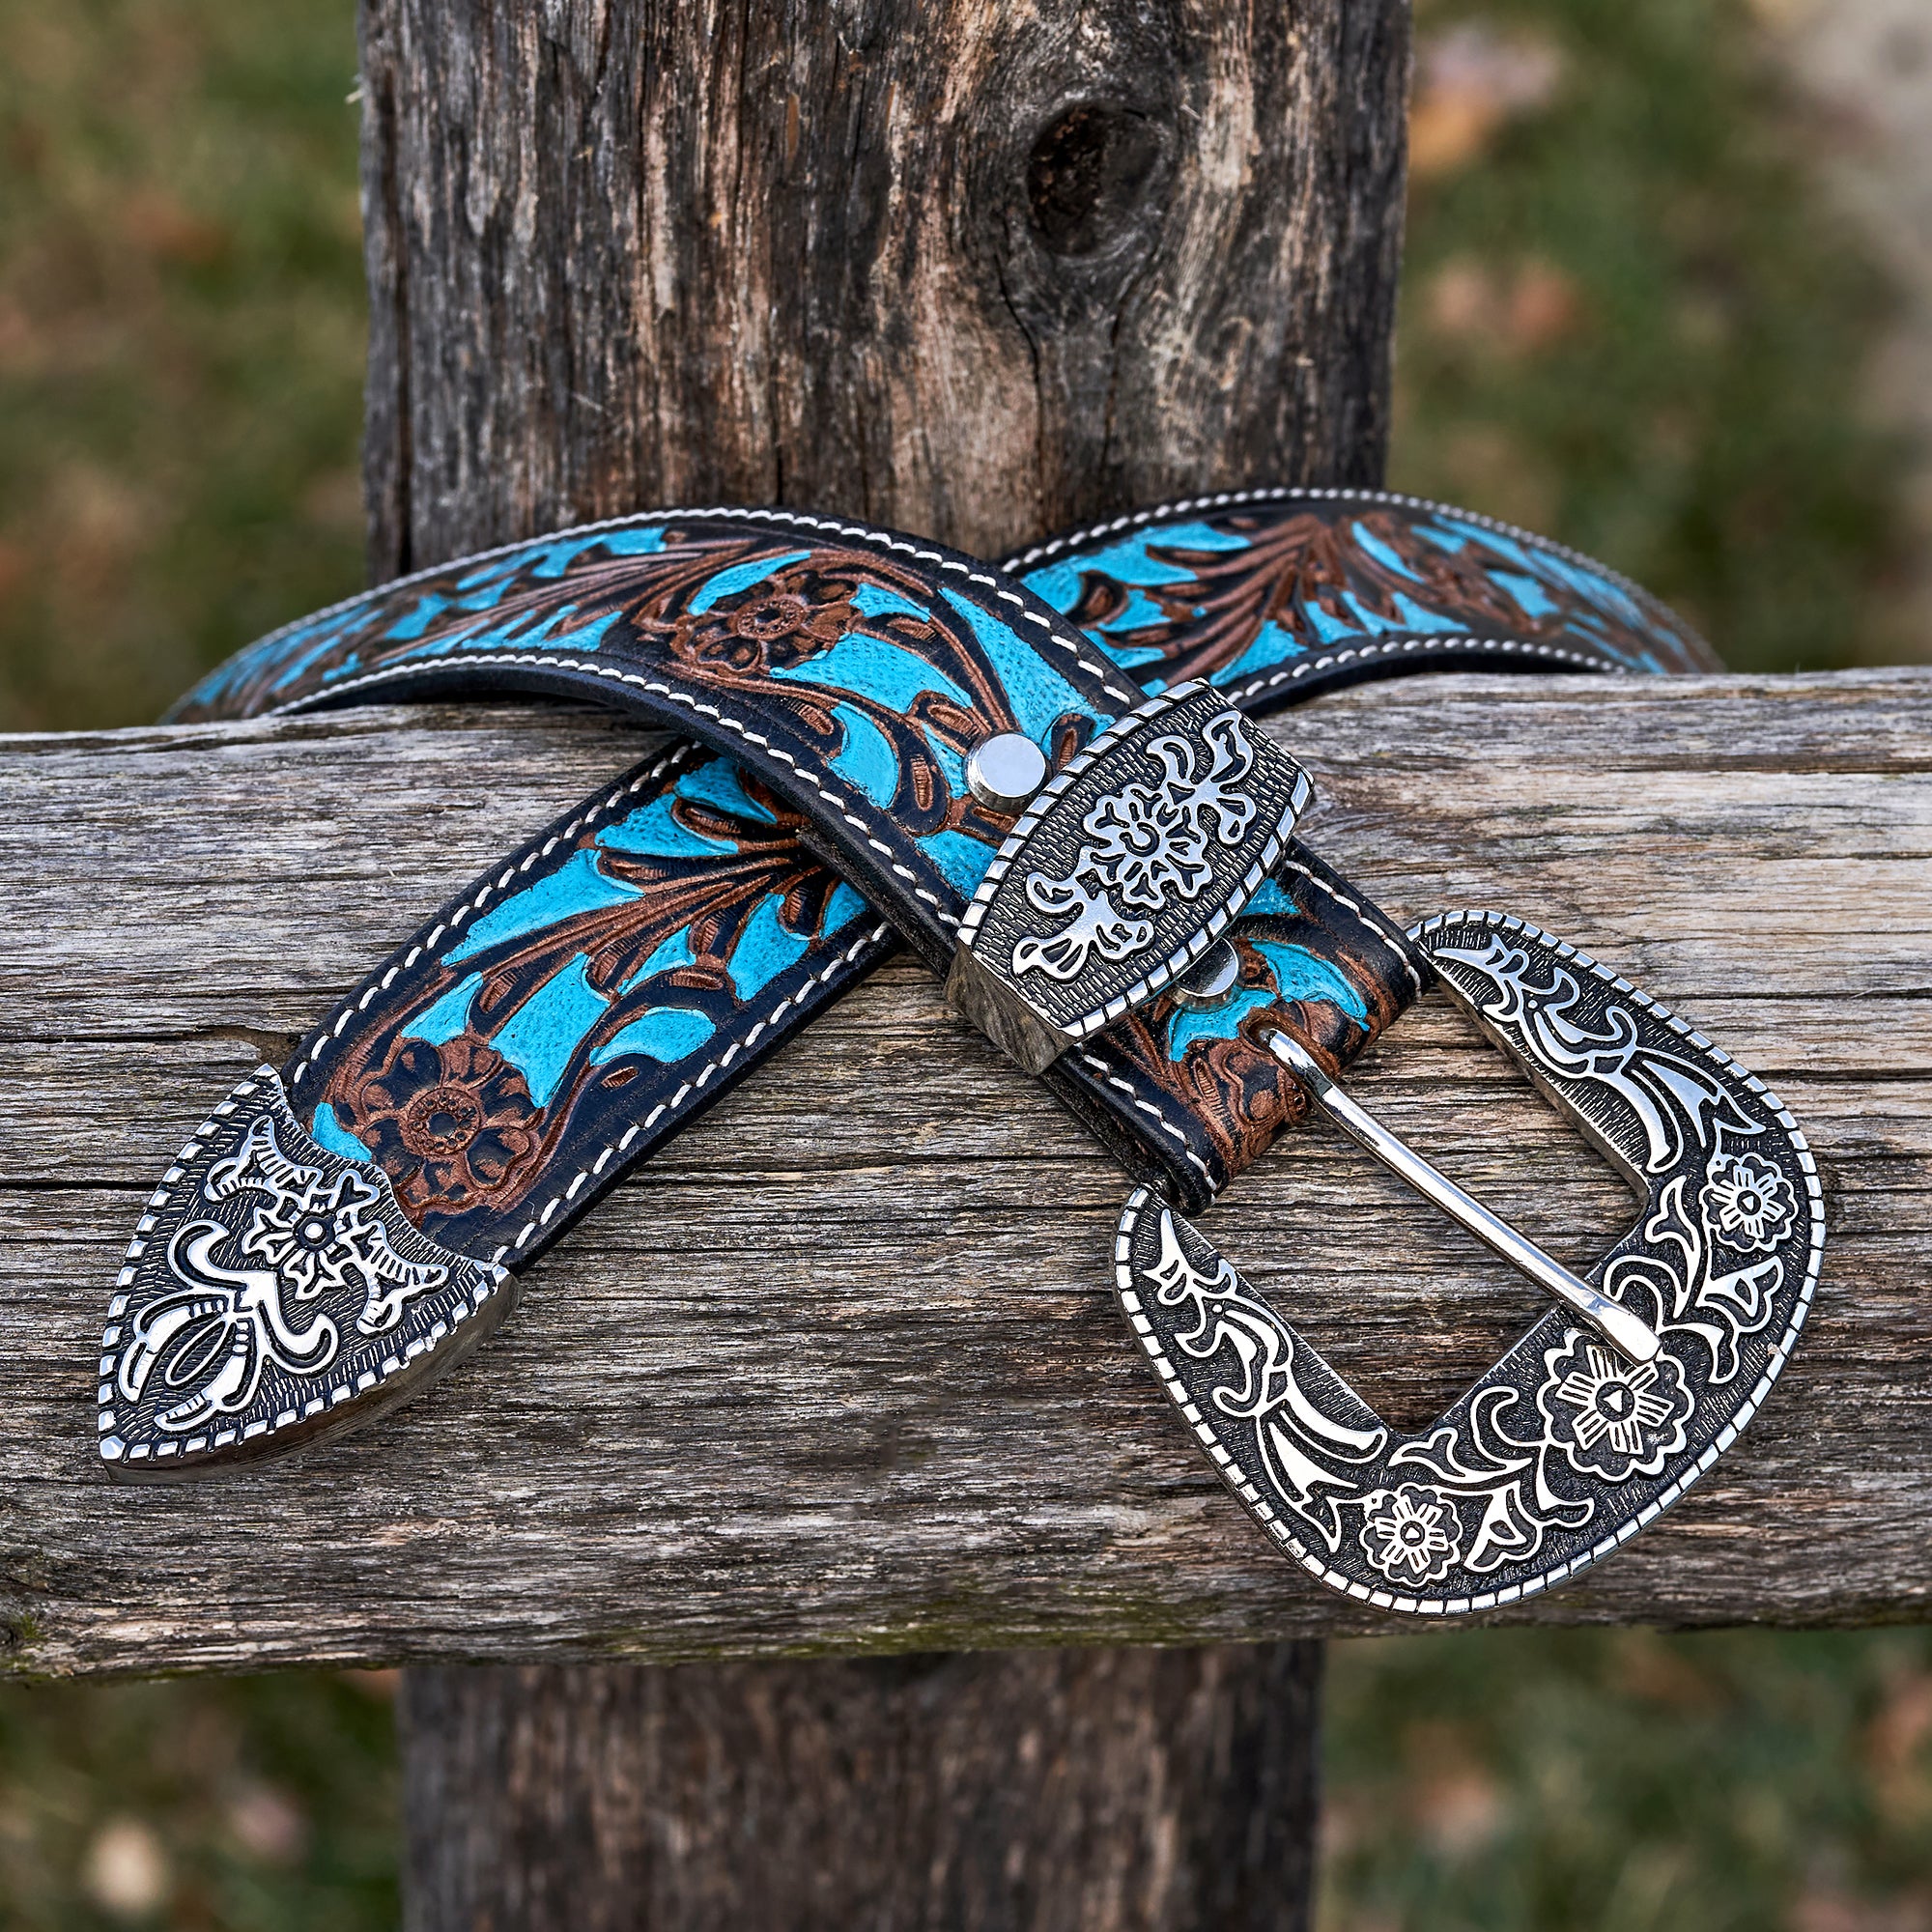 custom leather belts